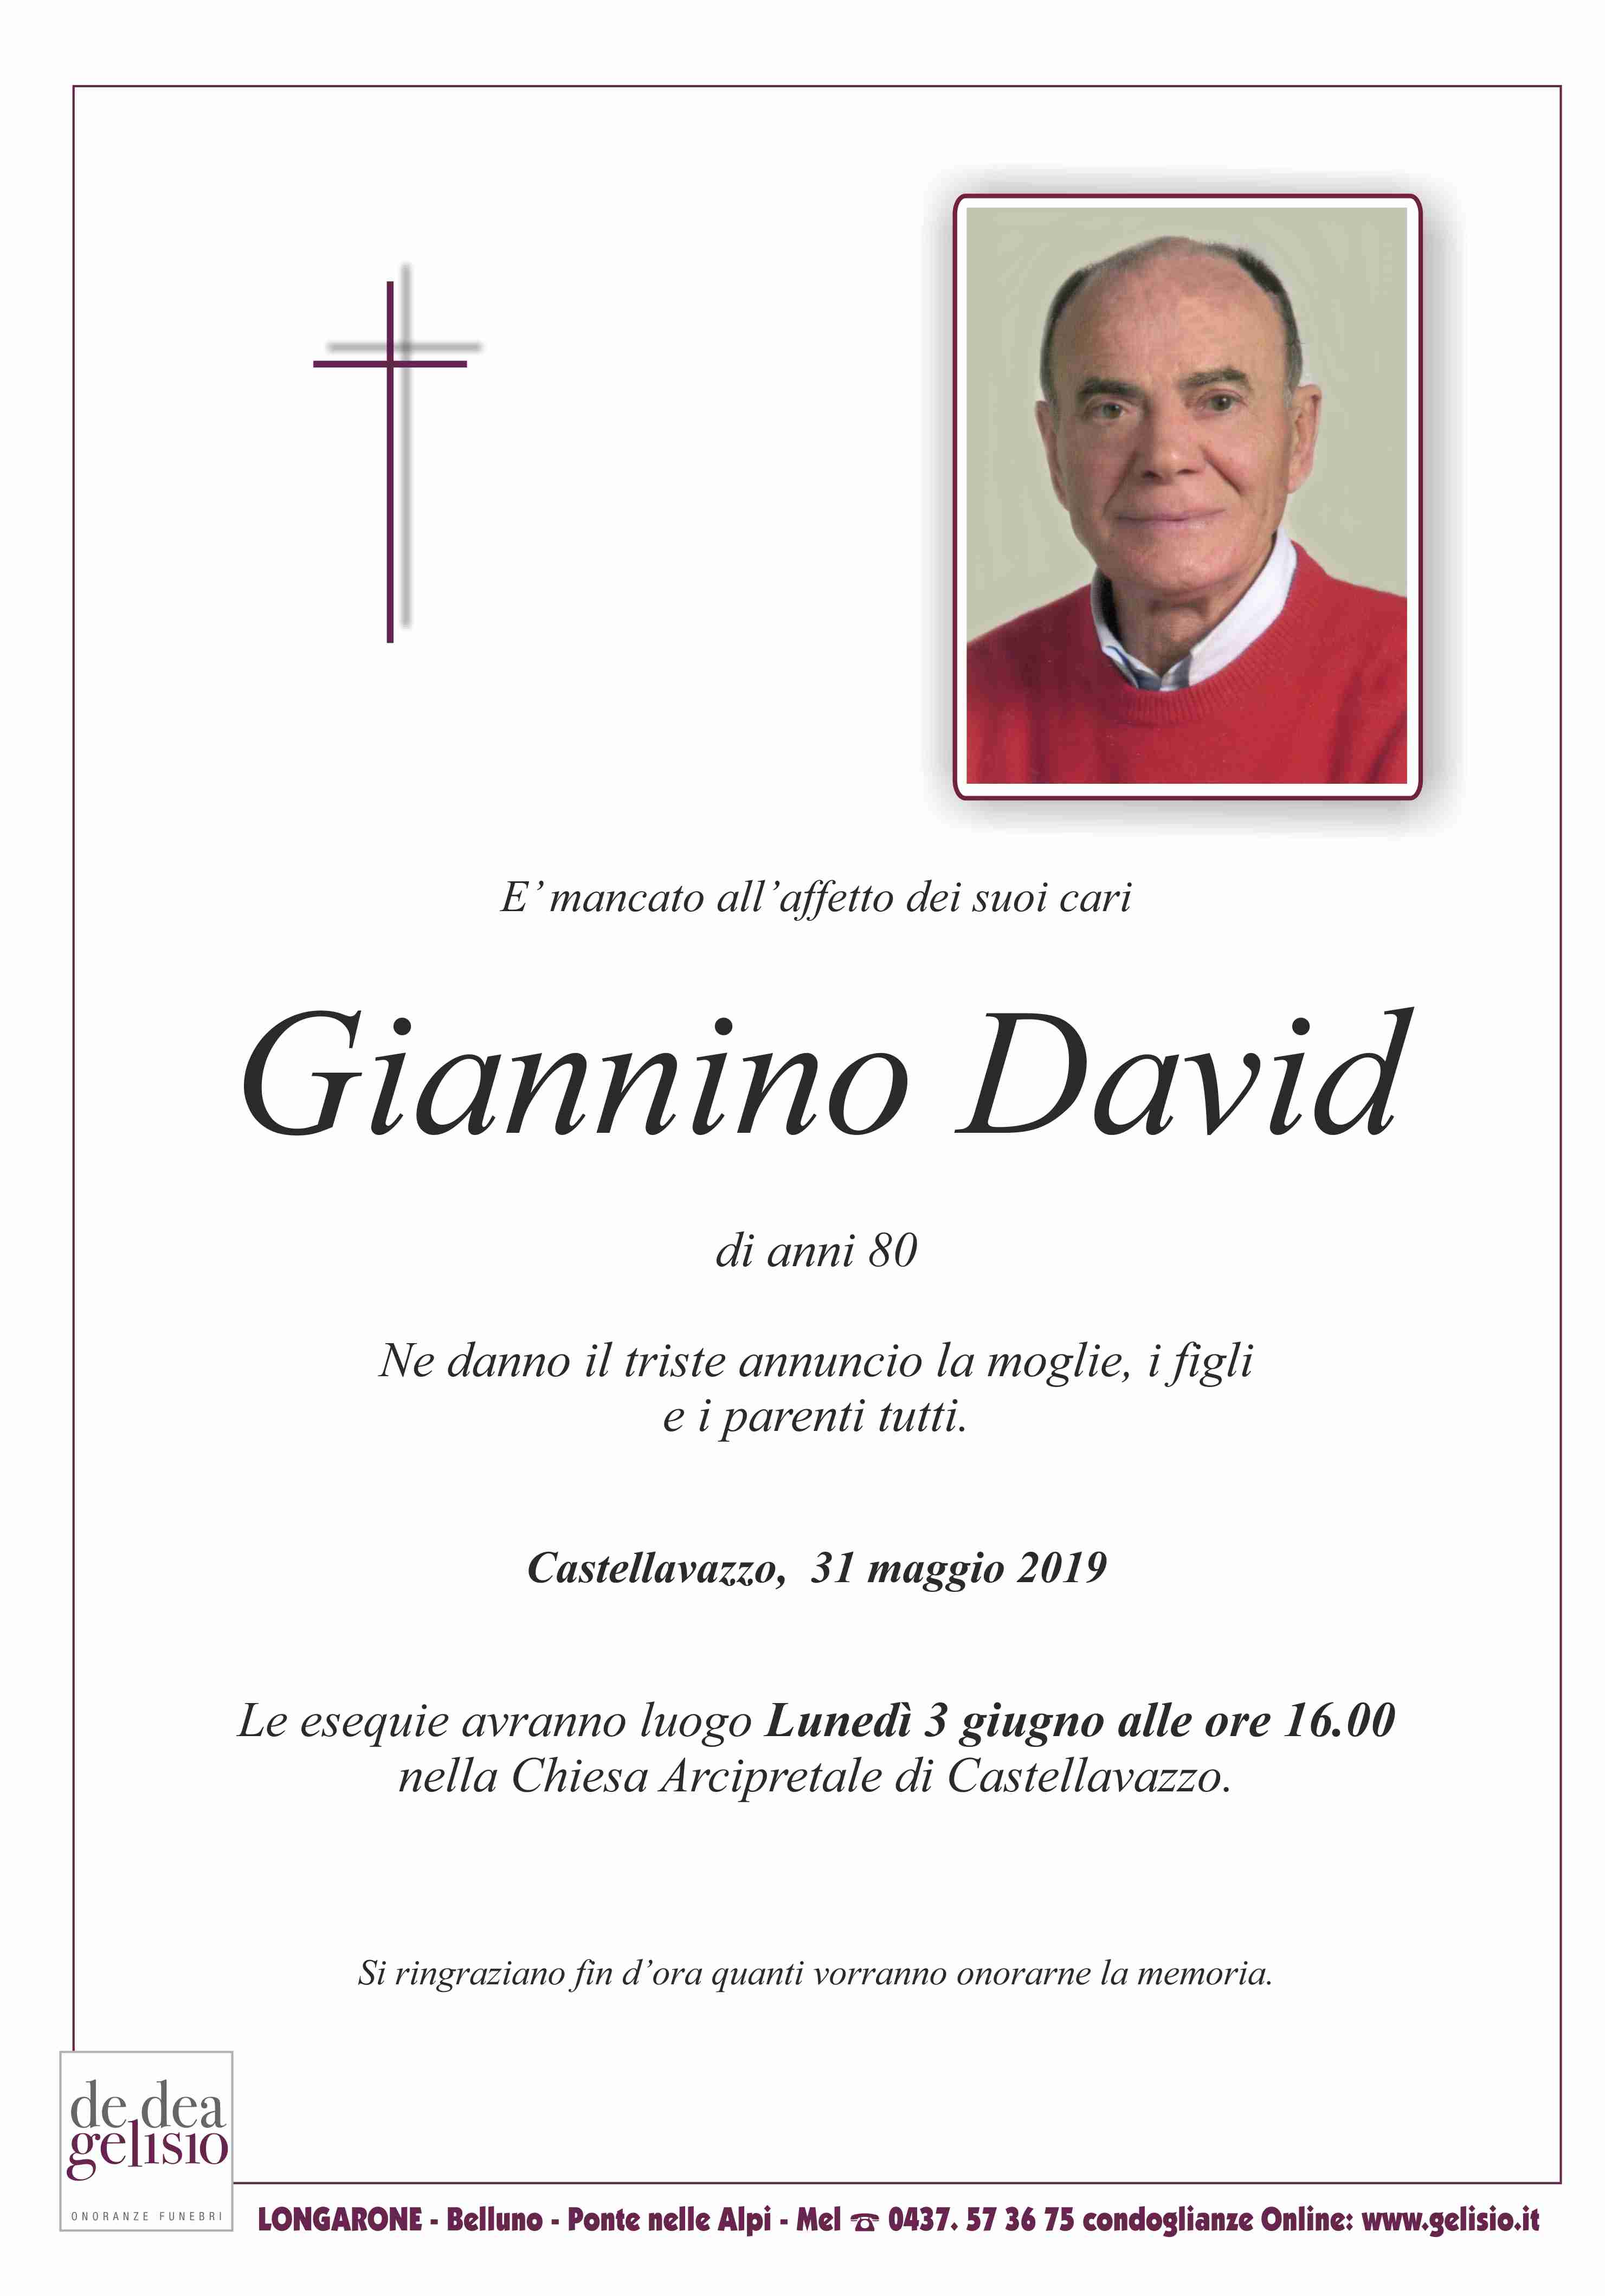 David Giannino